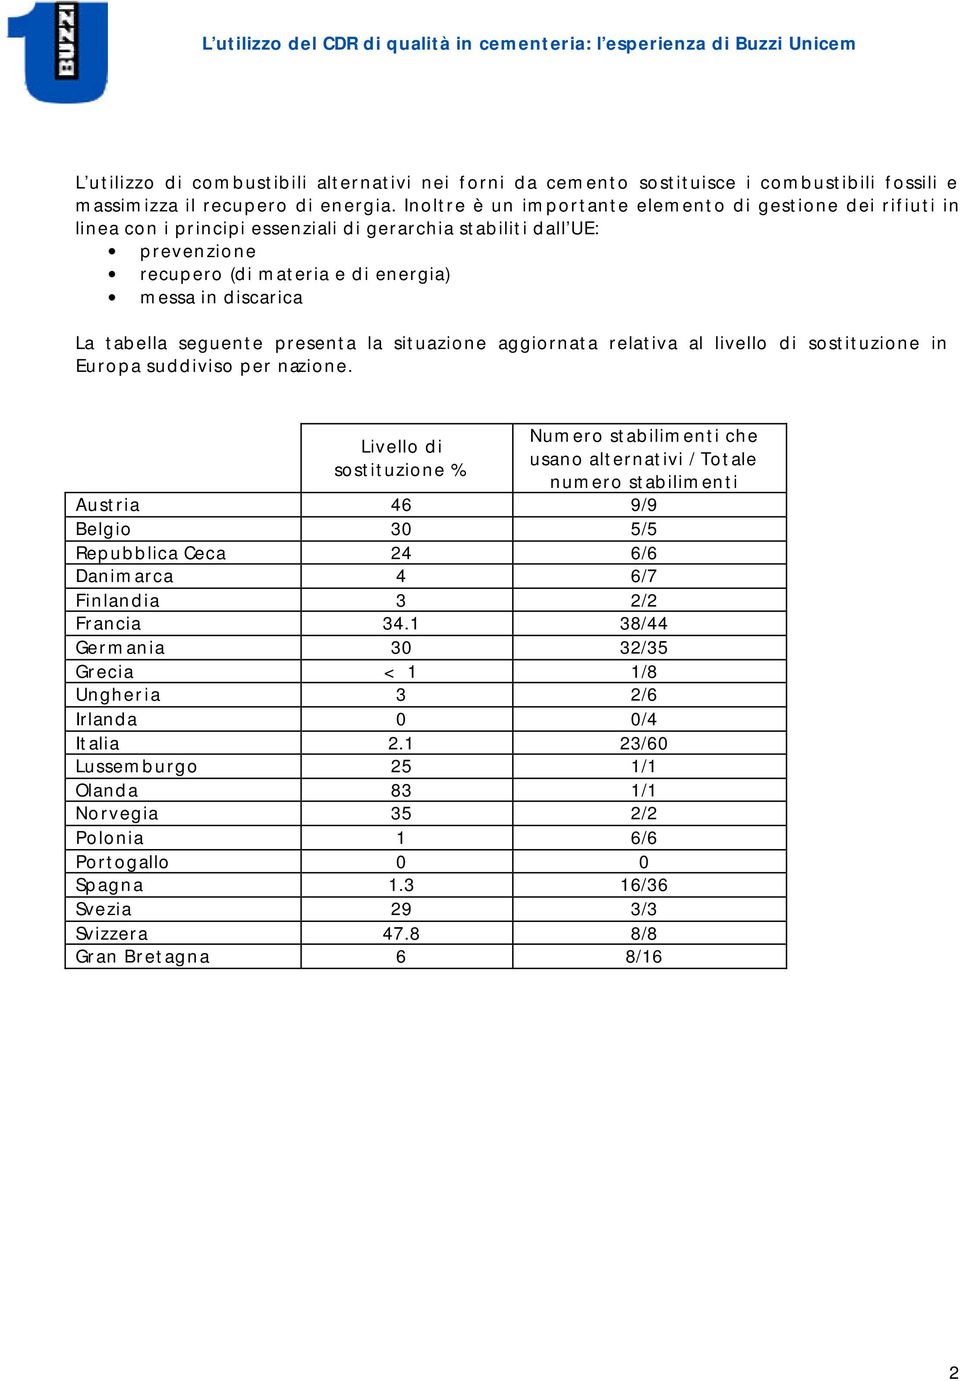 tabella seguente presenta la situazione aggiornata relativa al livello di sostituzione in Europa suddiviso per nazione.